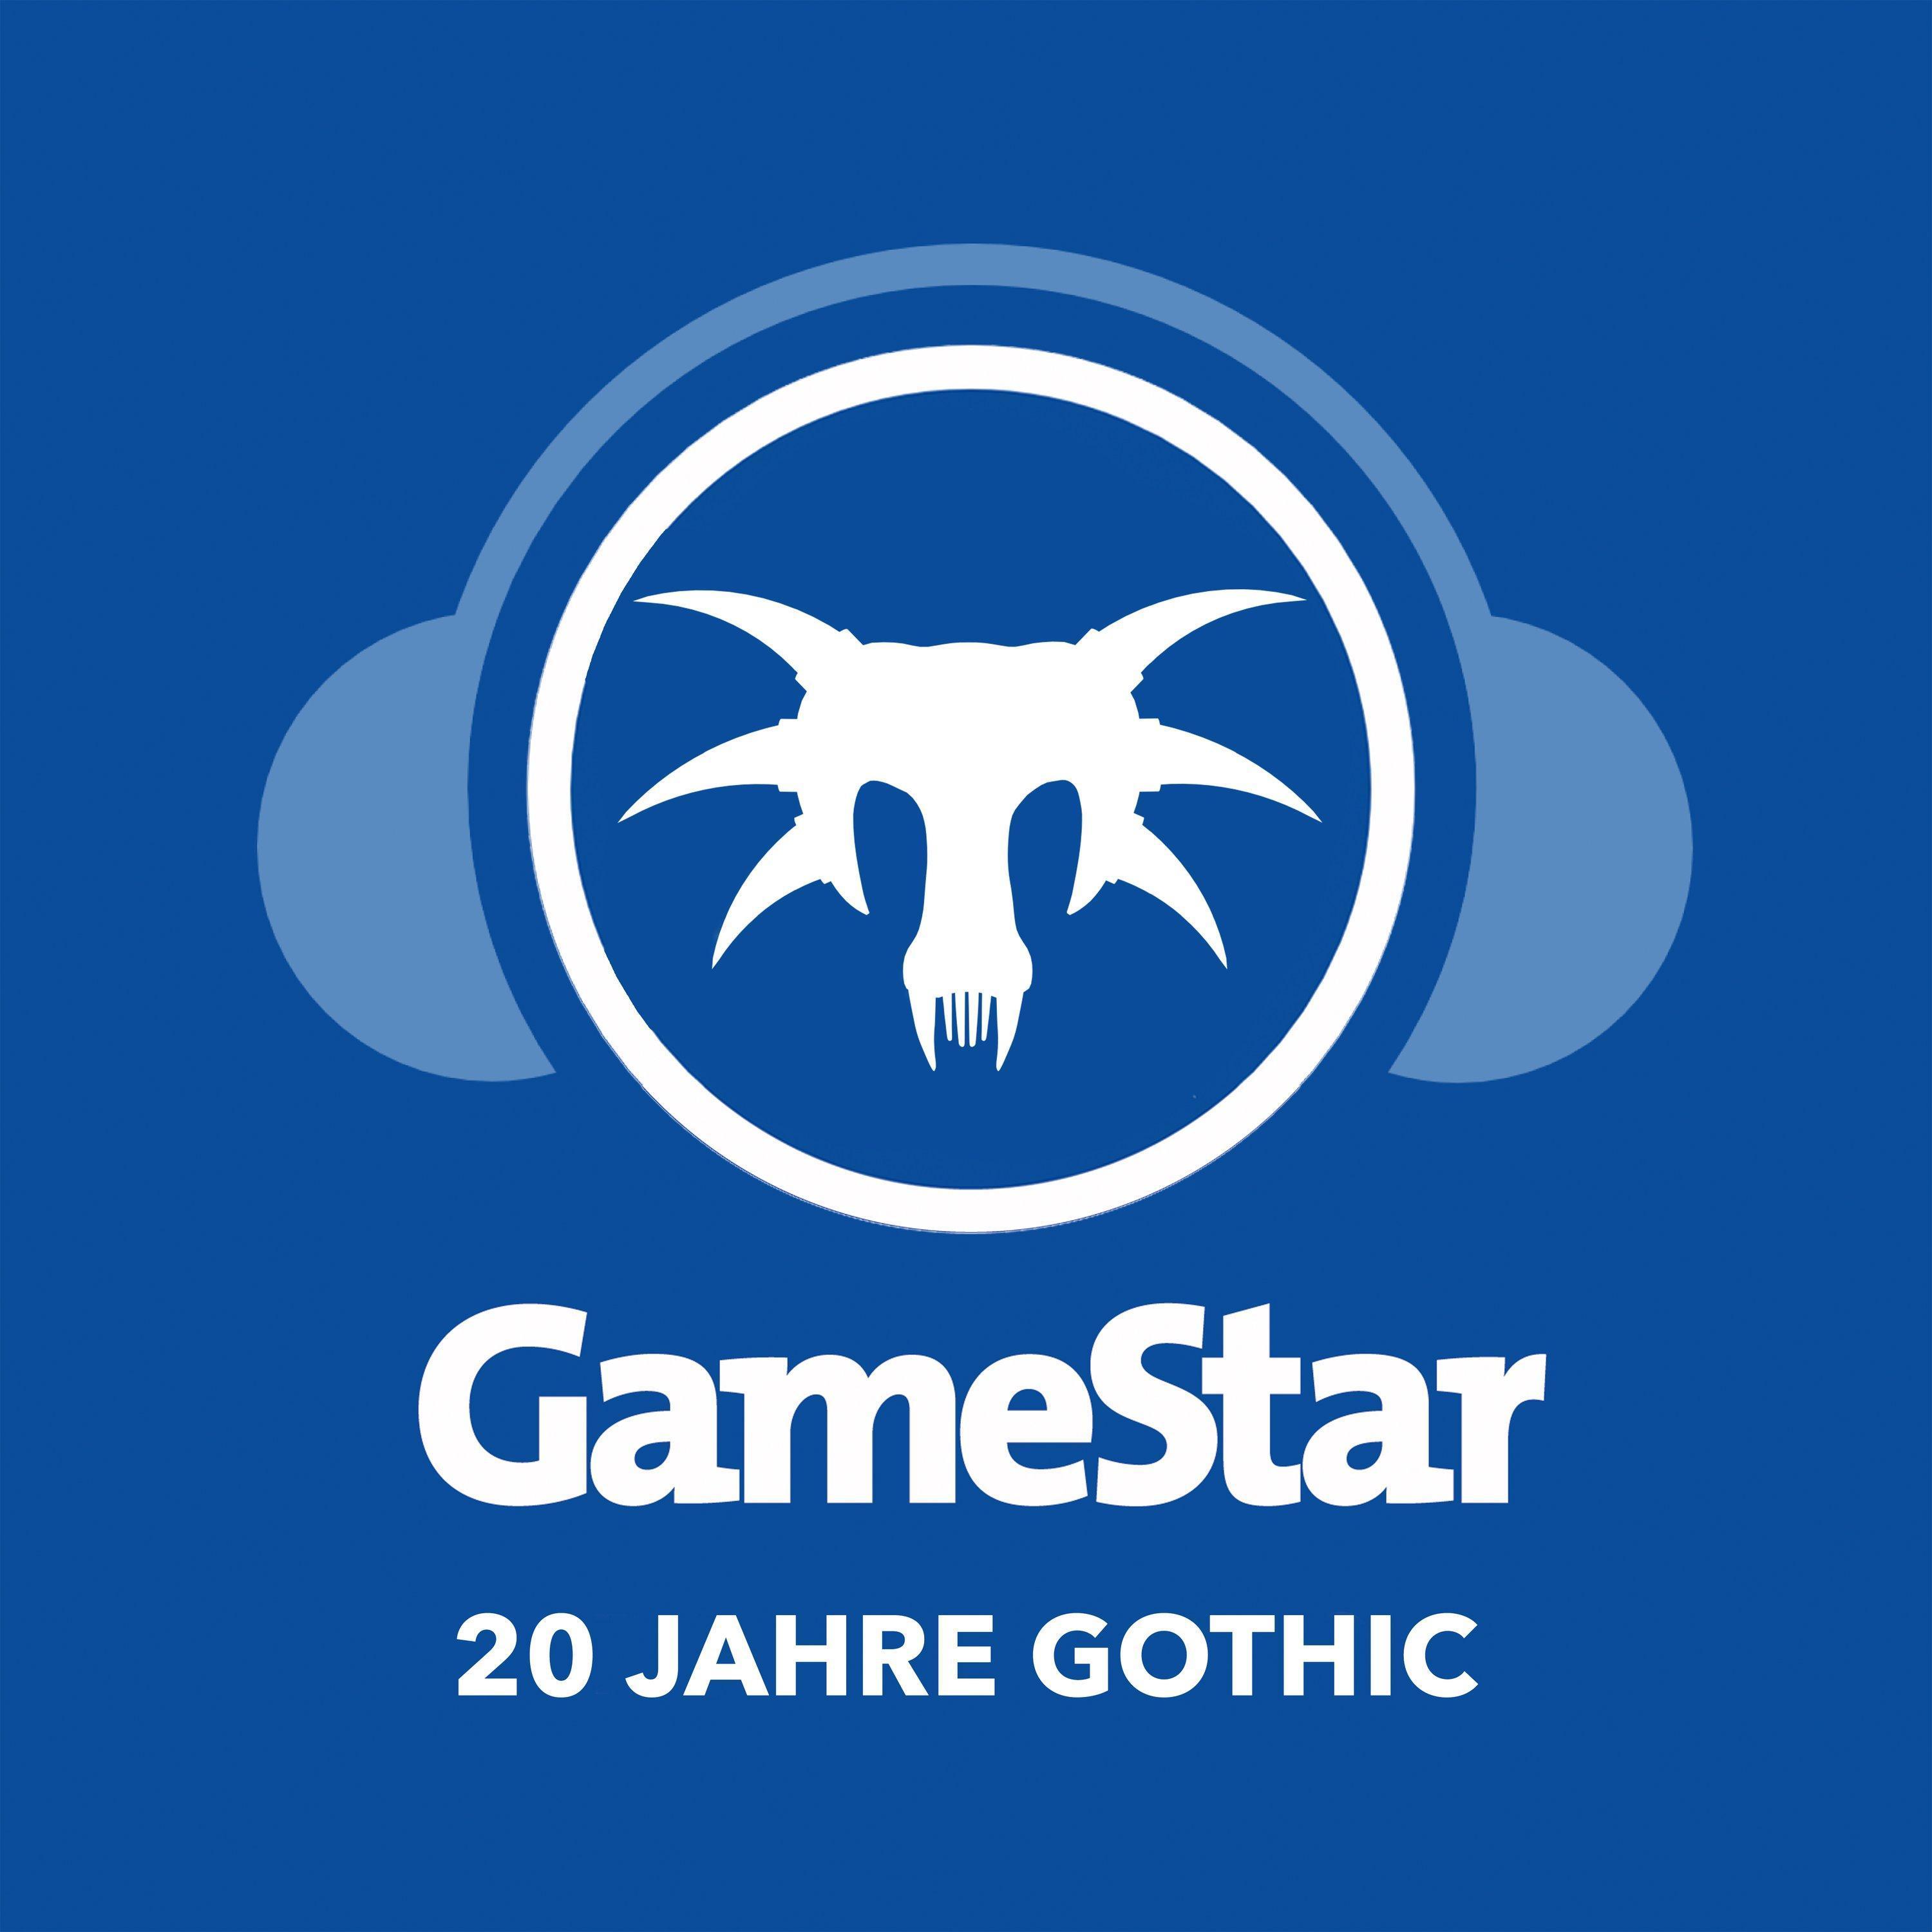 GameStar